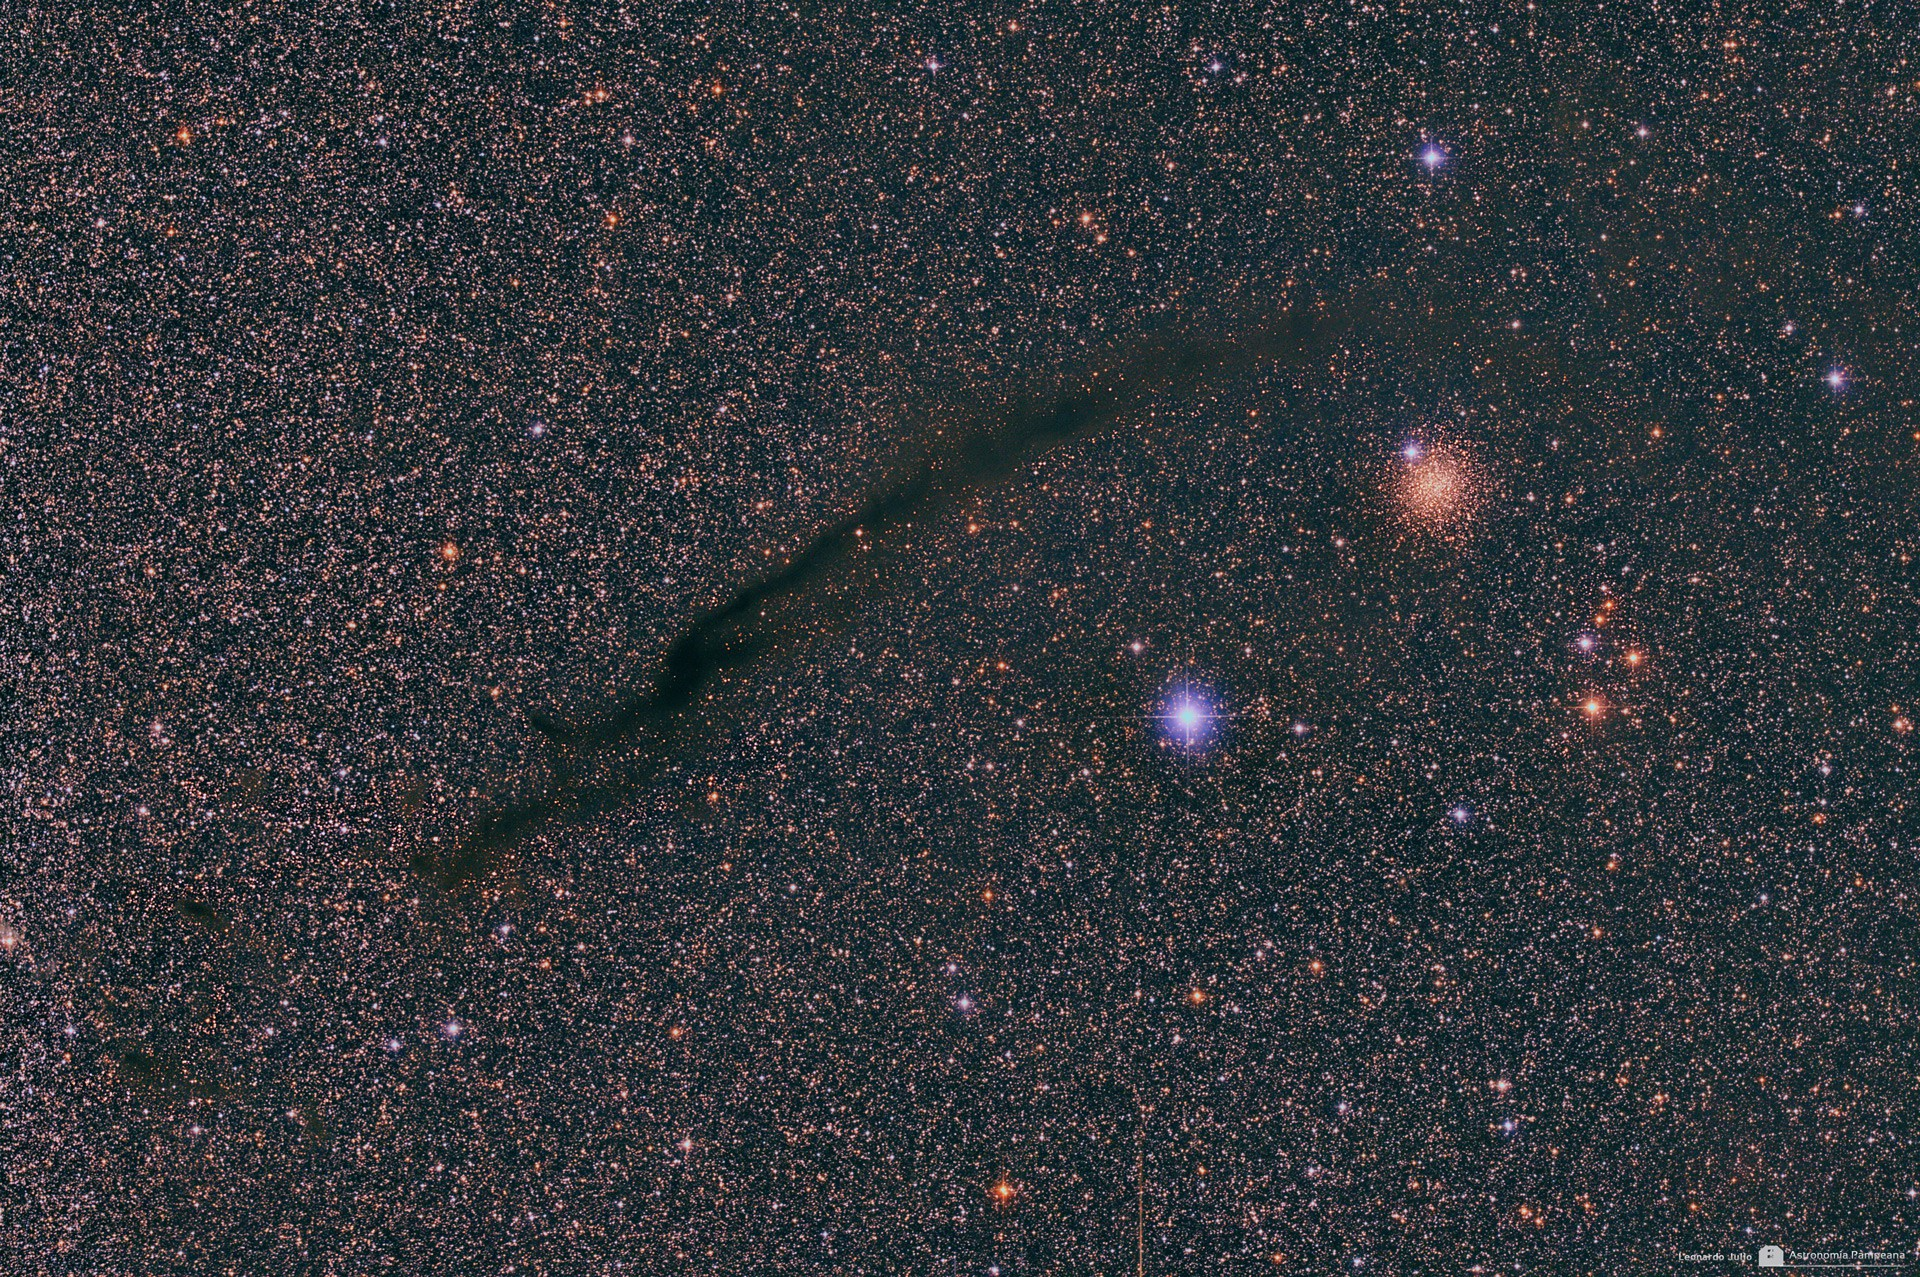 HD100546 Localizada en la constelación de Musca a una distancia de 103pc Disco circumestelar con 721 ua de extensión